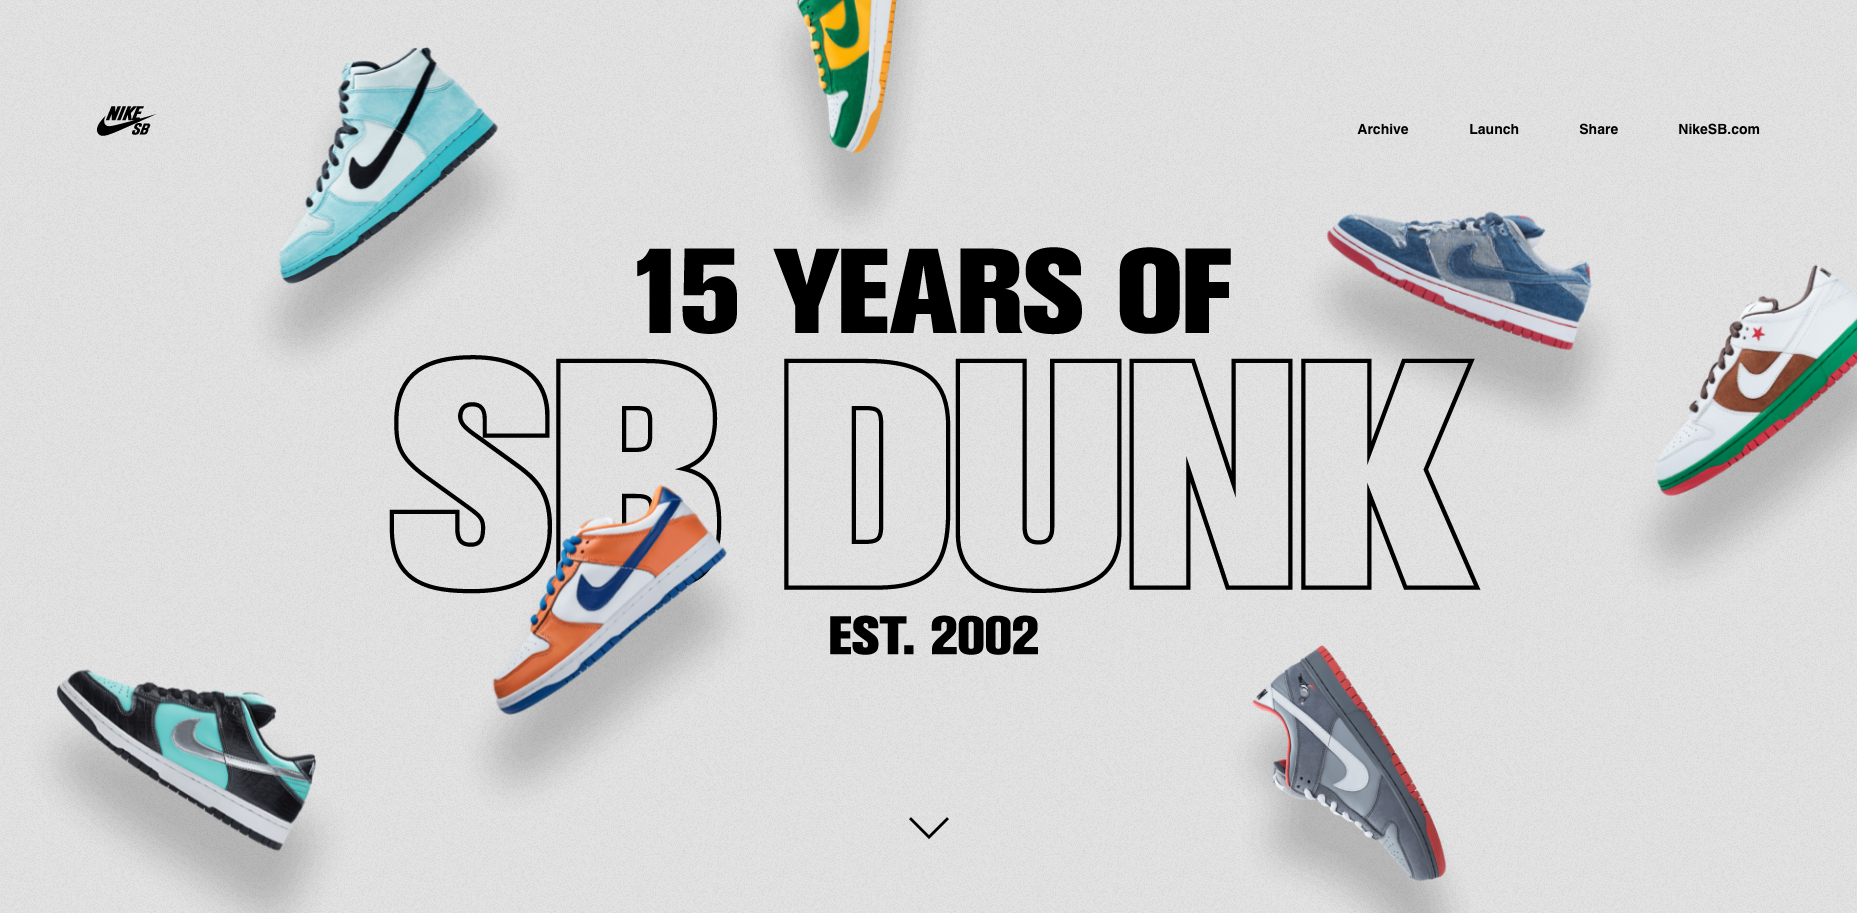 Nike SB celebra 15 años de con un website especial - 25 Gramos | 25 Gramos